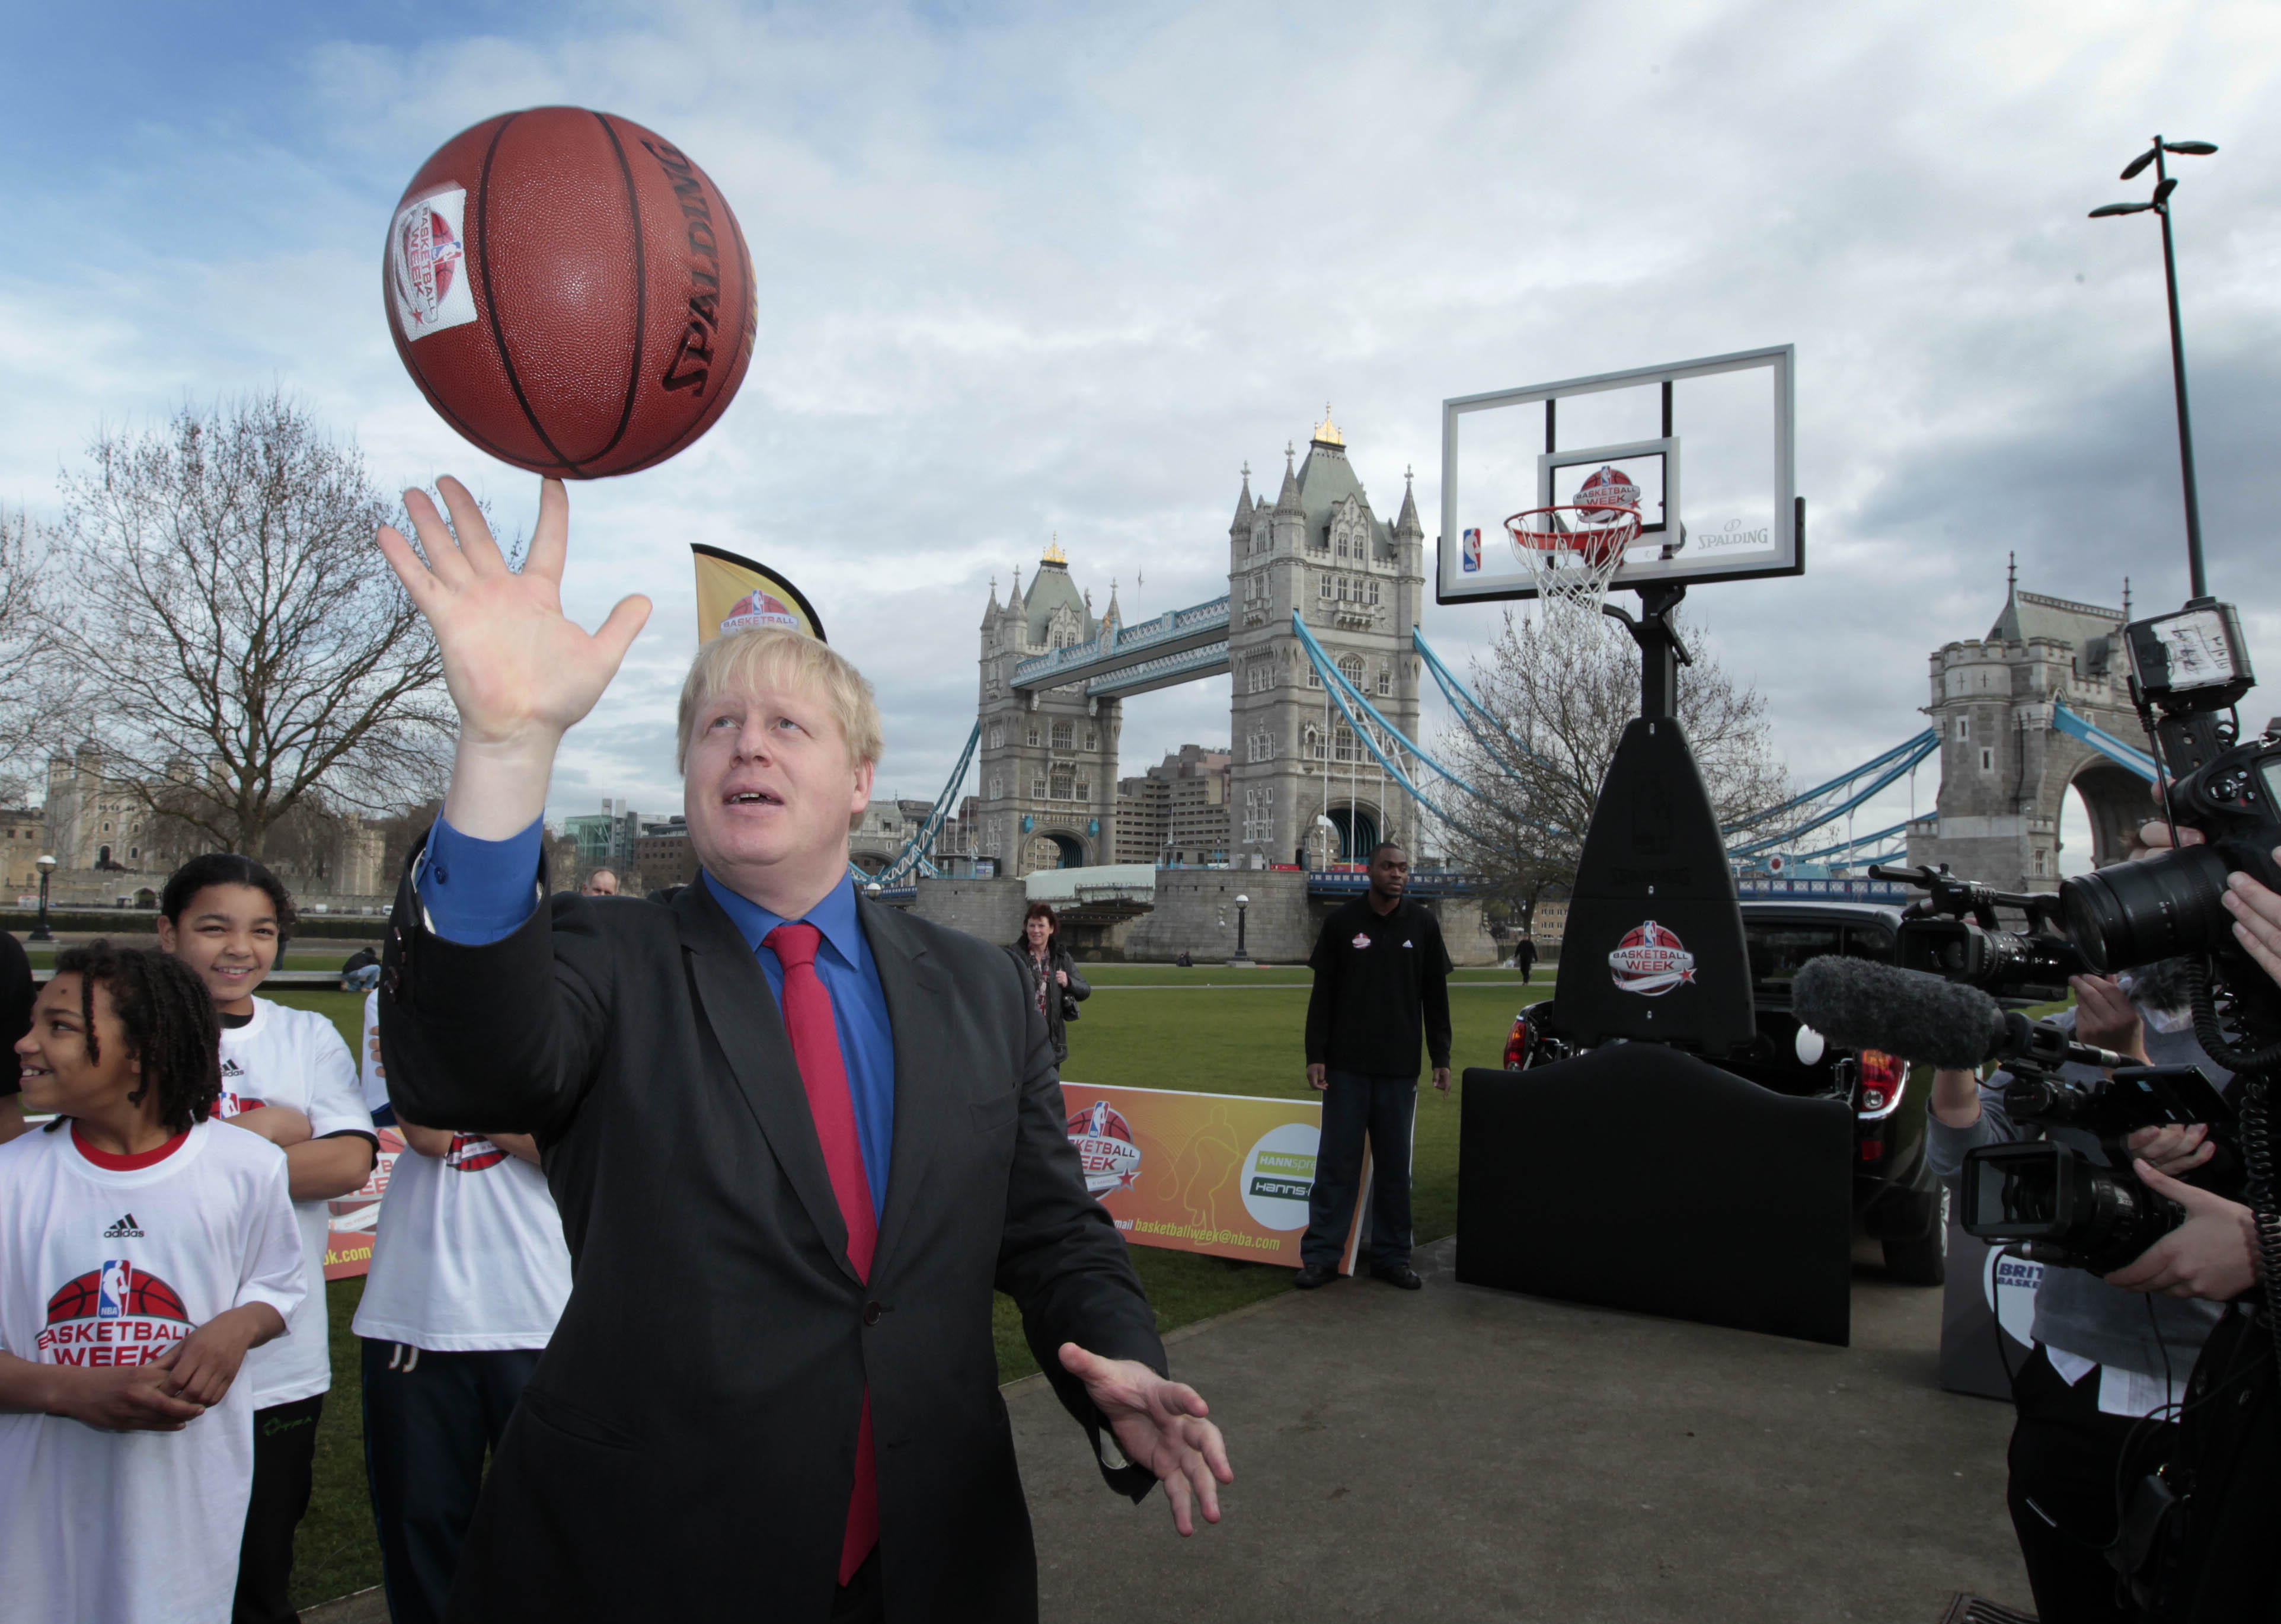 Boris_Johnson_at_launch_of_NBA_week_2_February_25_2011